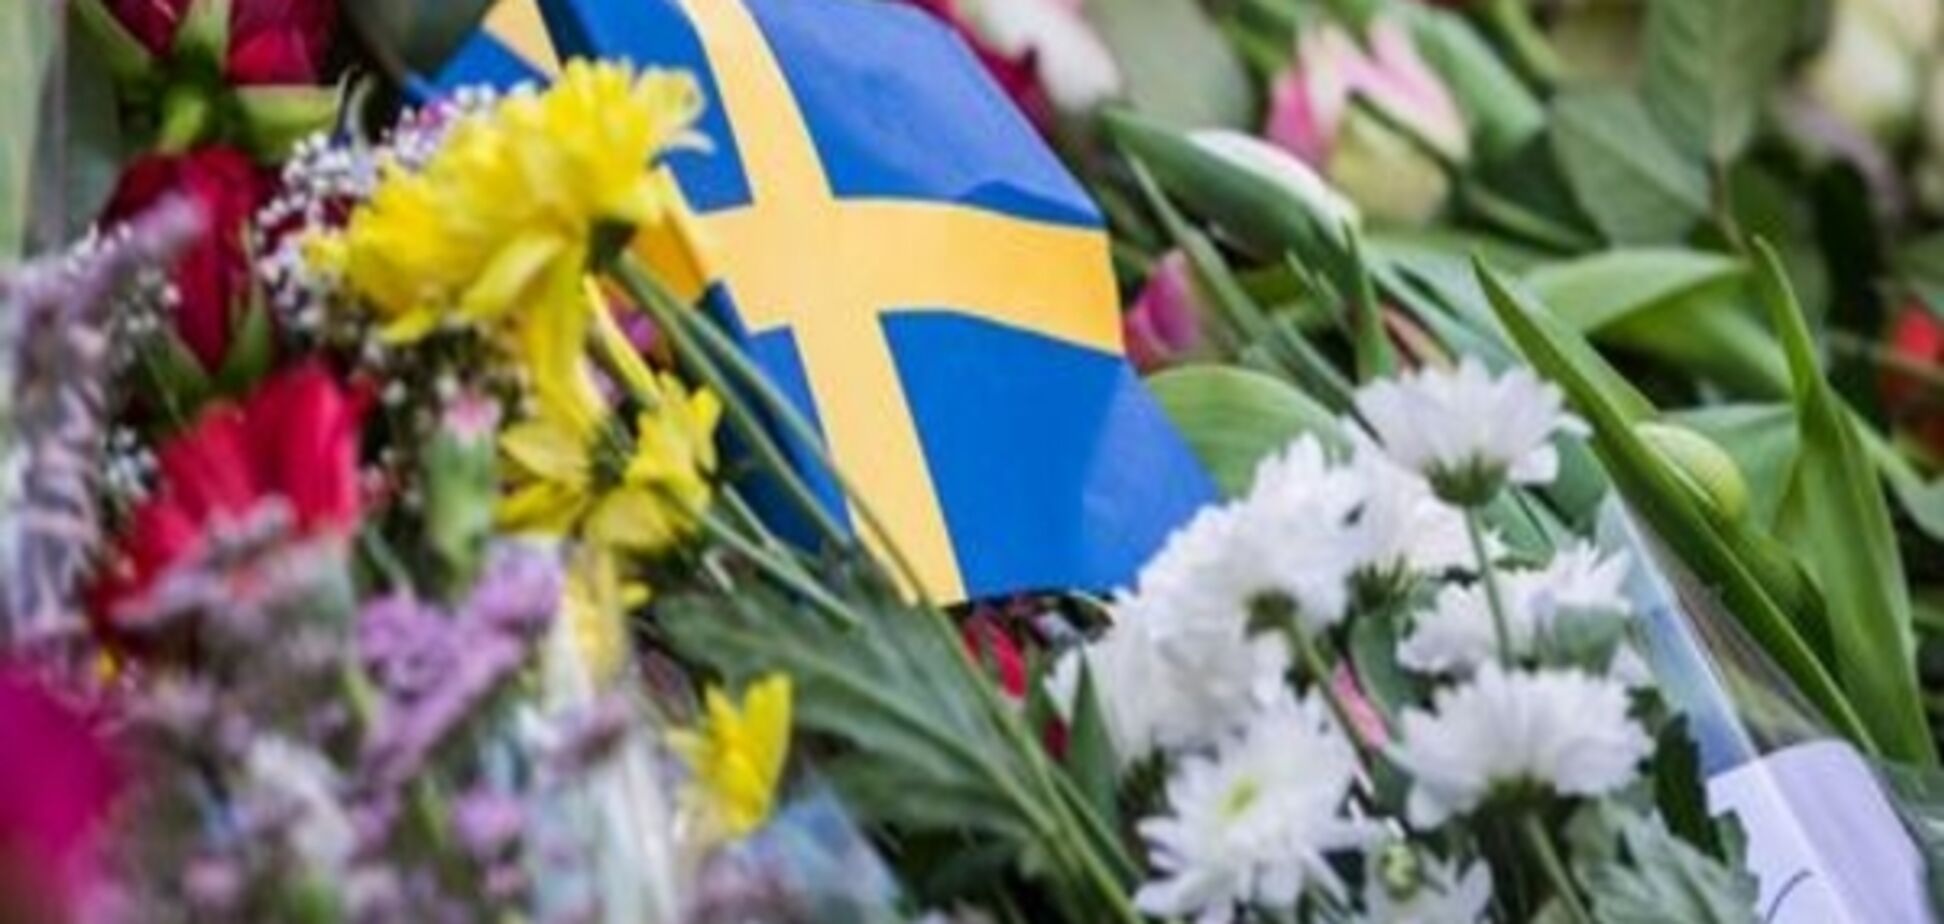 Узбекистан попереджав Швецію щодо підозрюваного стокгольмського нападника